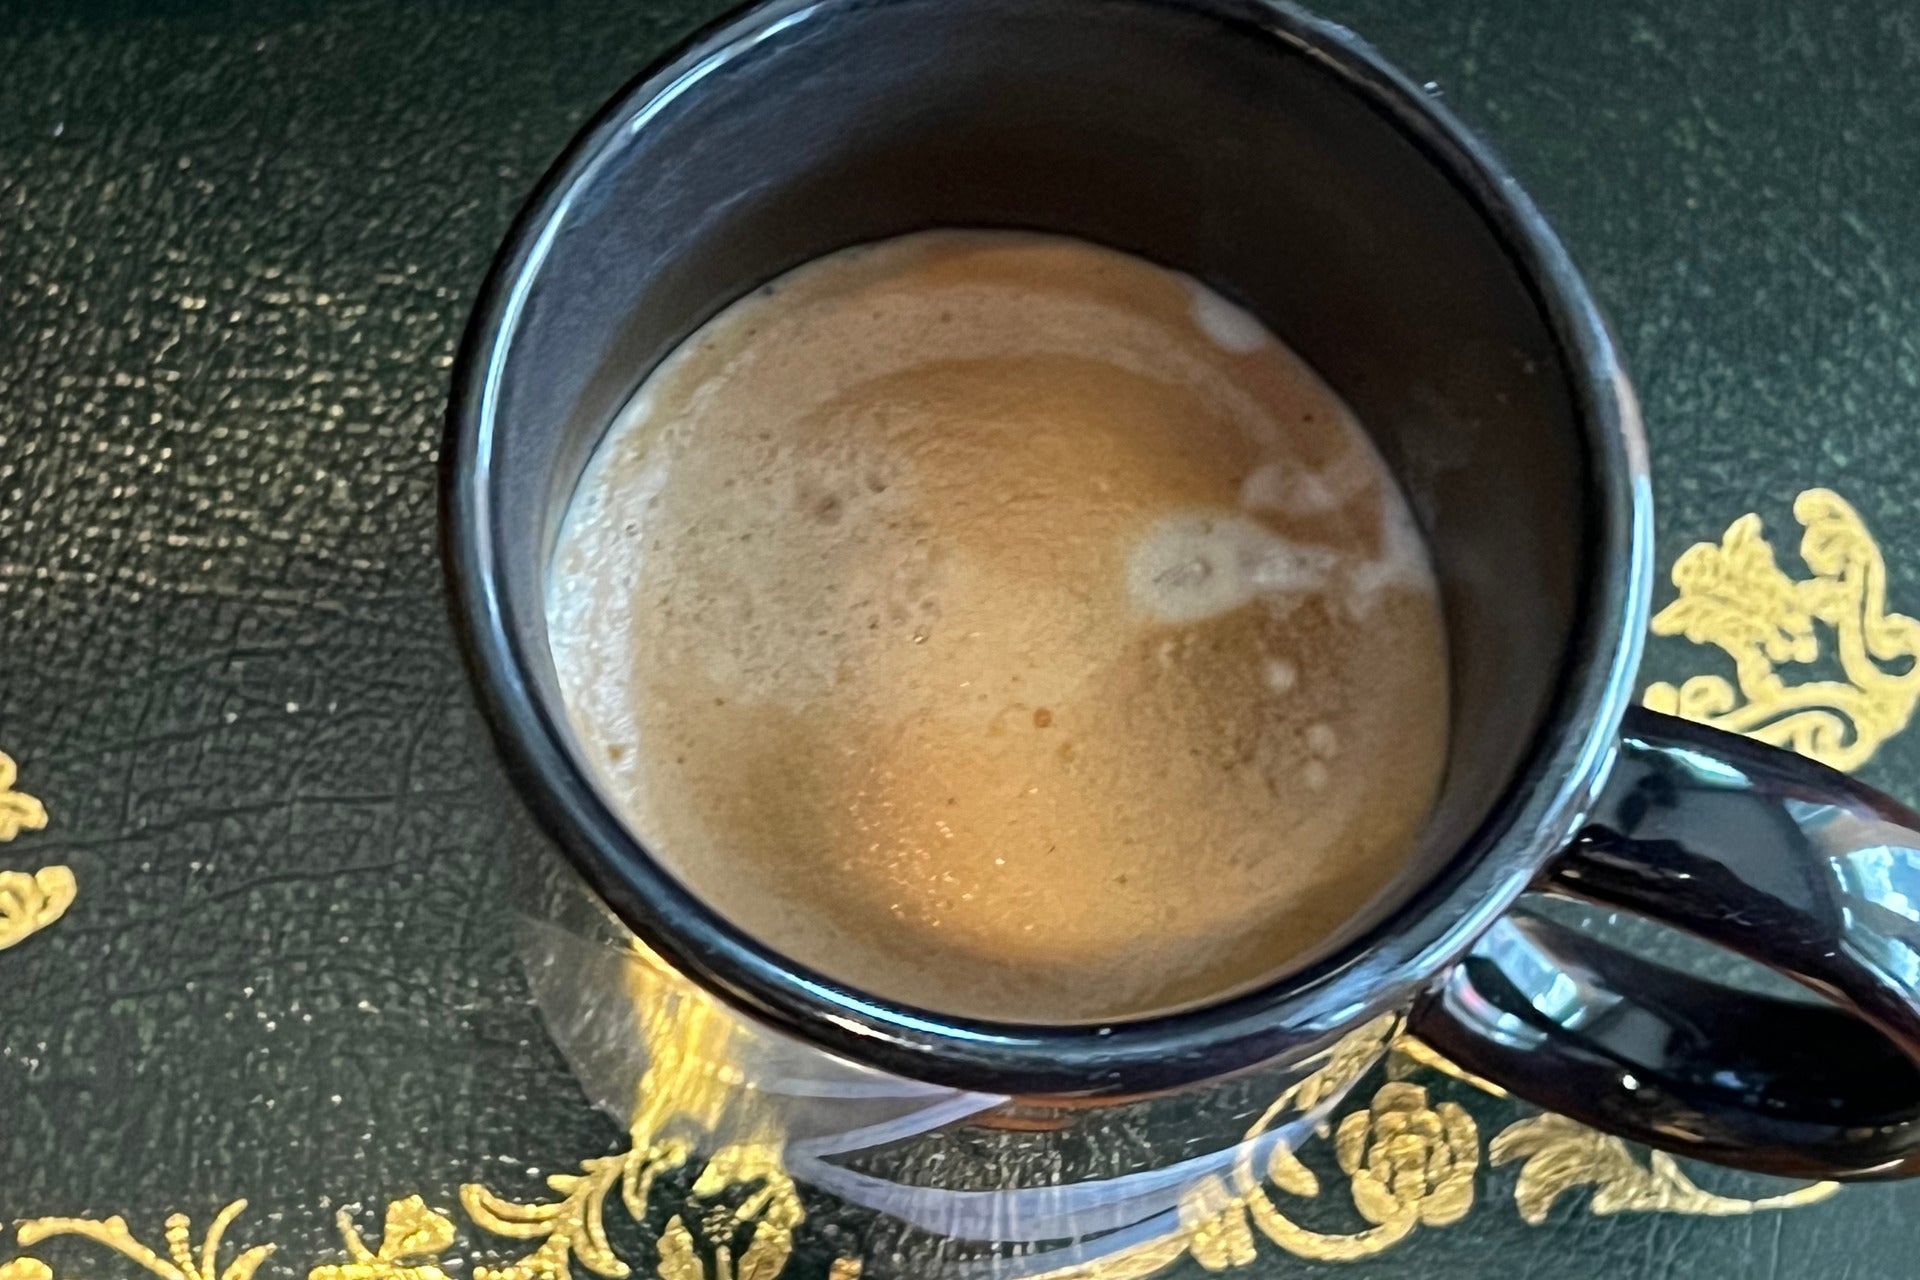 Nespresso Vertuo Lattissima cappuccino